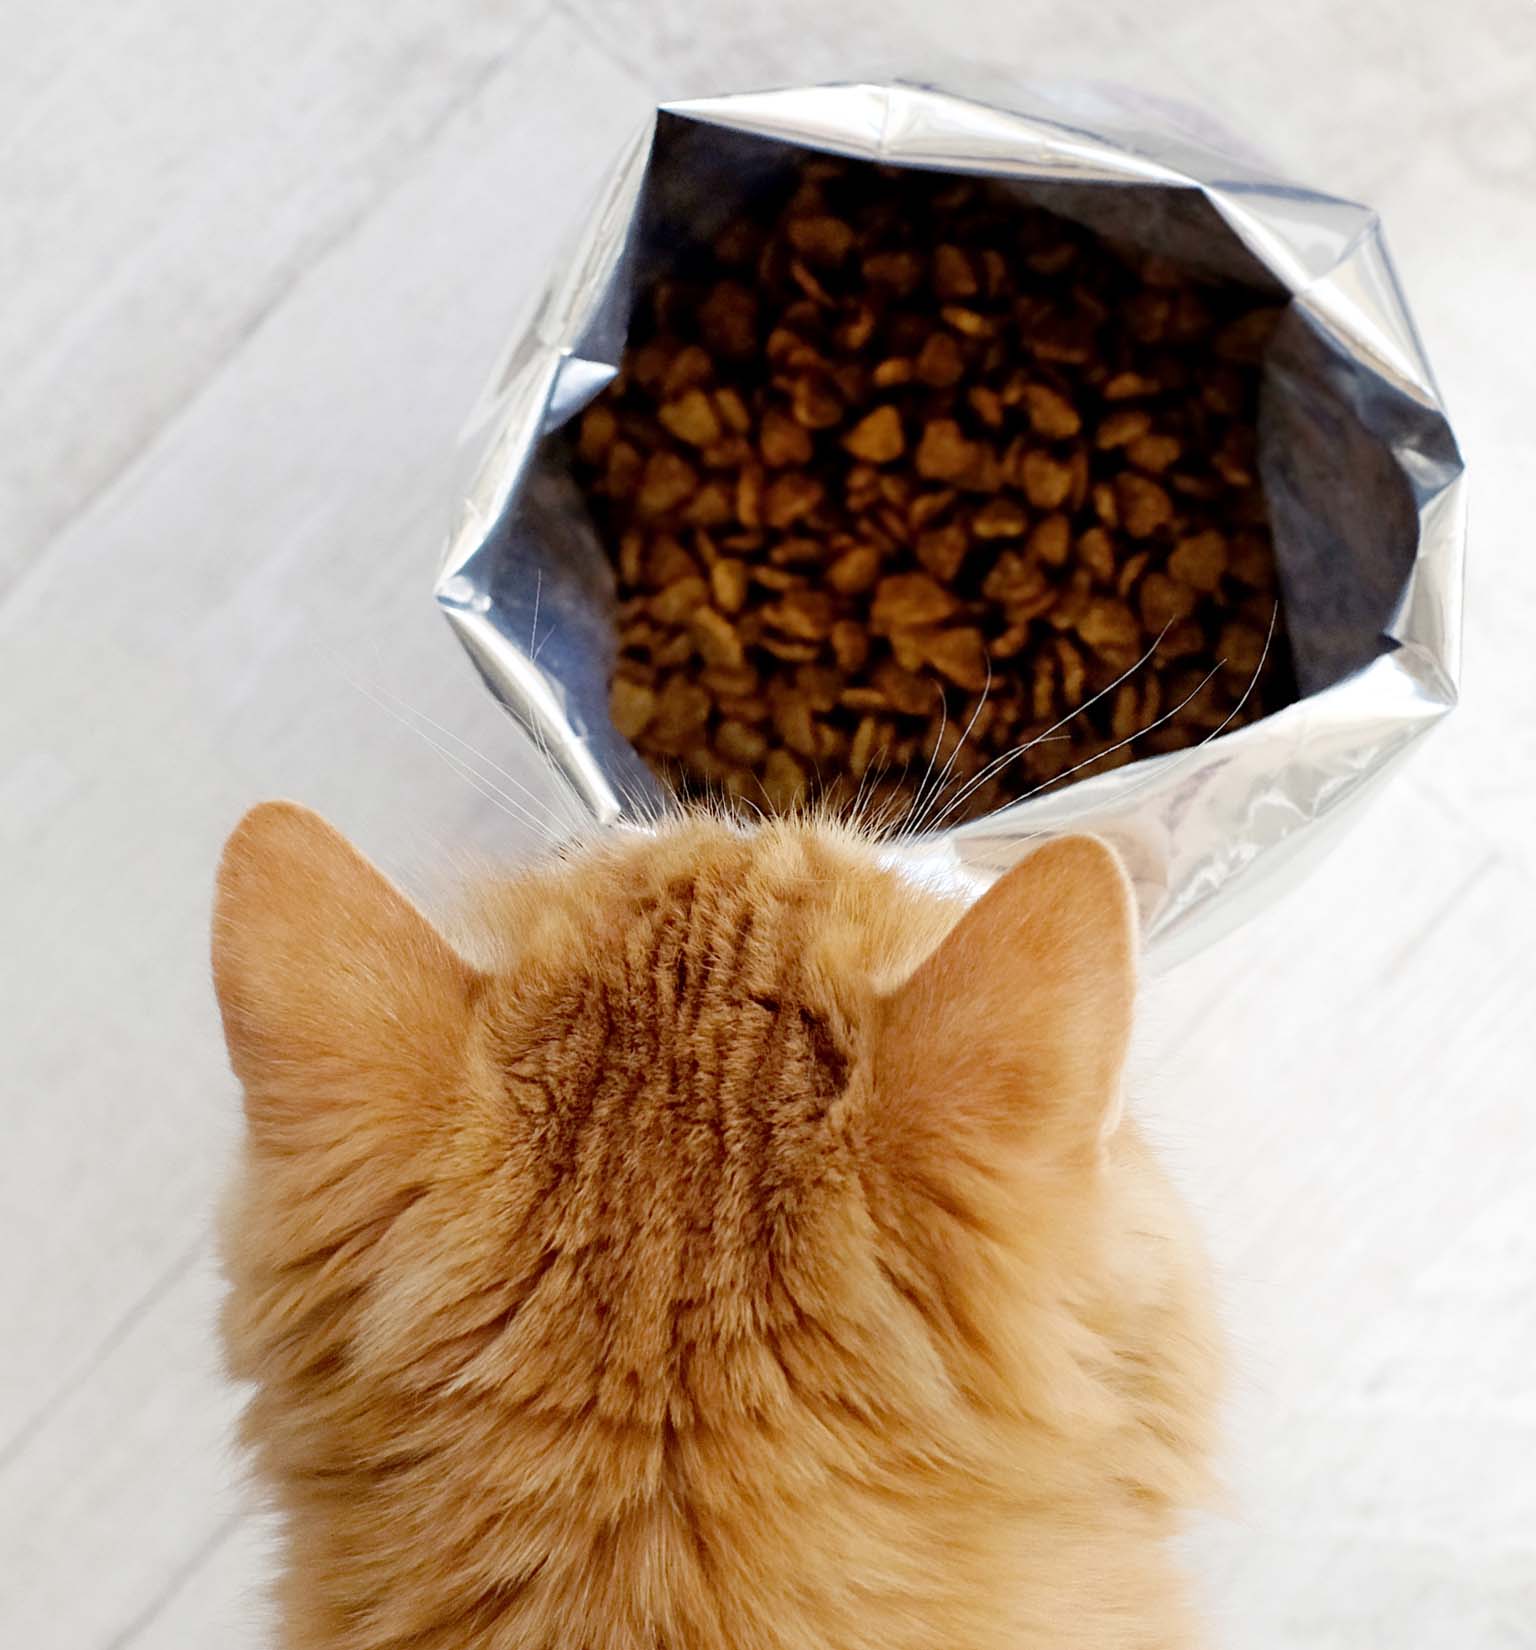 Devrais-je donner de la nourriture sèche ou humide à mon chat?